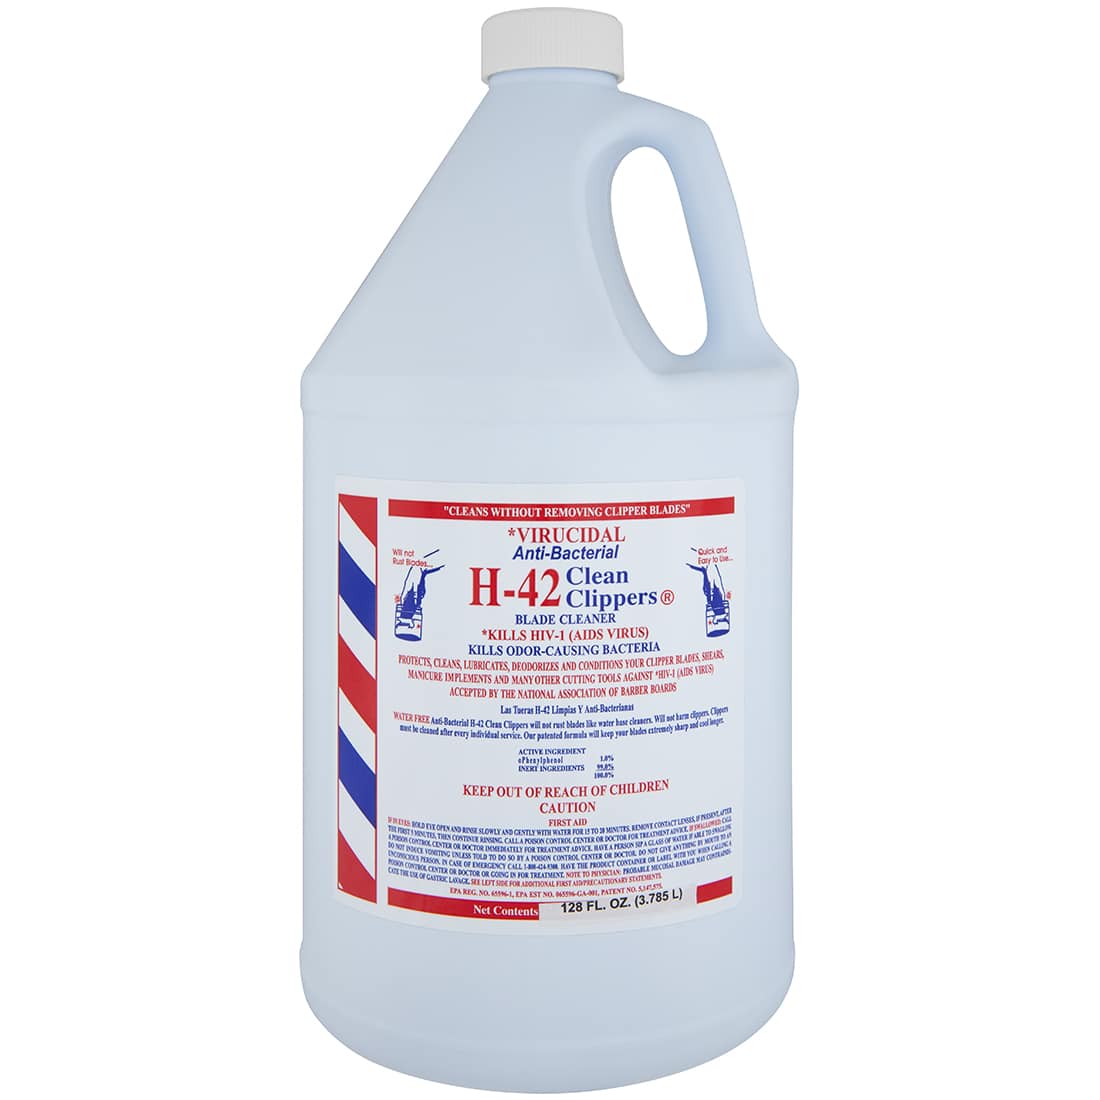 Virucidal Anti-Bacterial Gallon by H-42